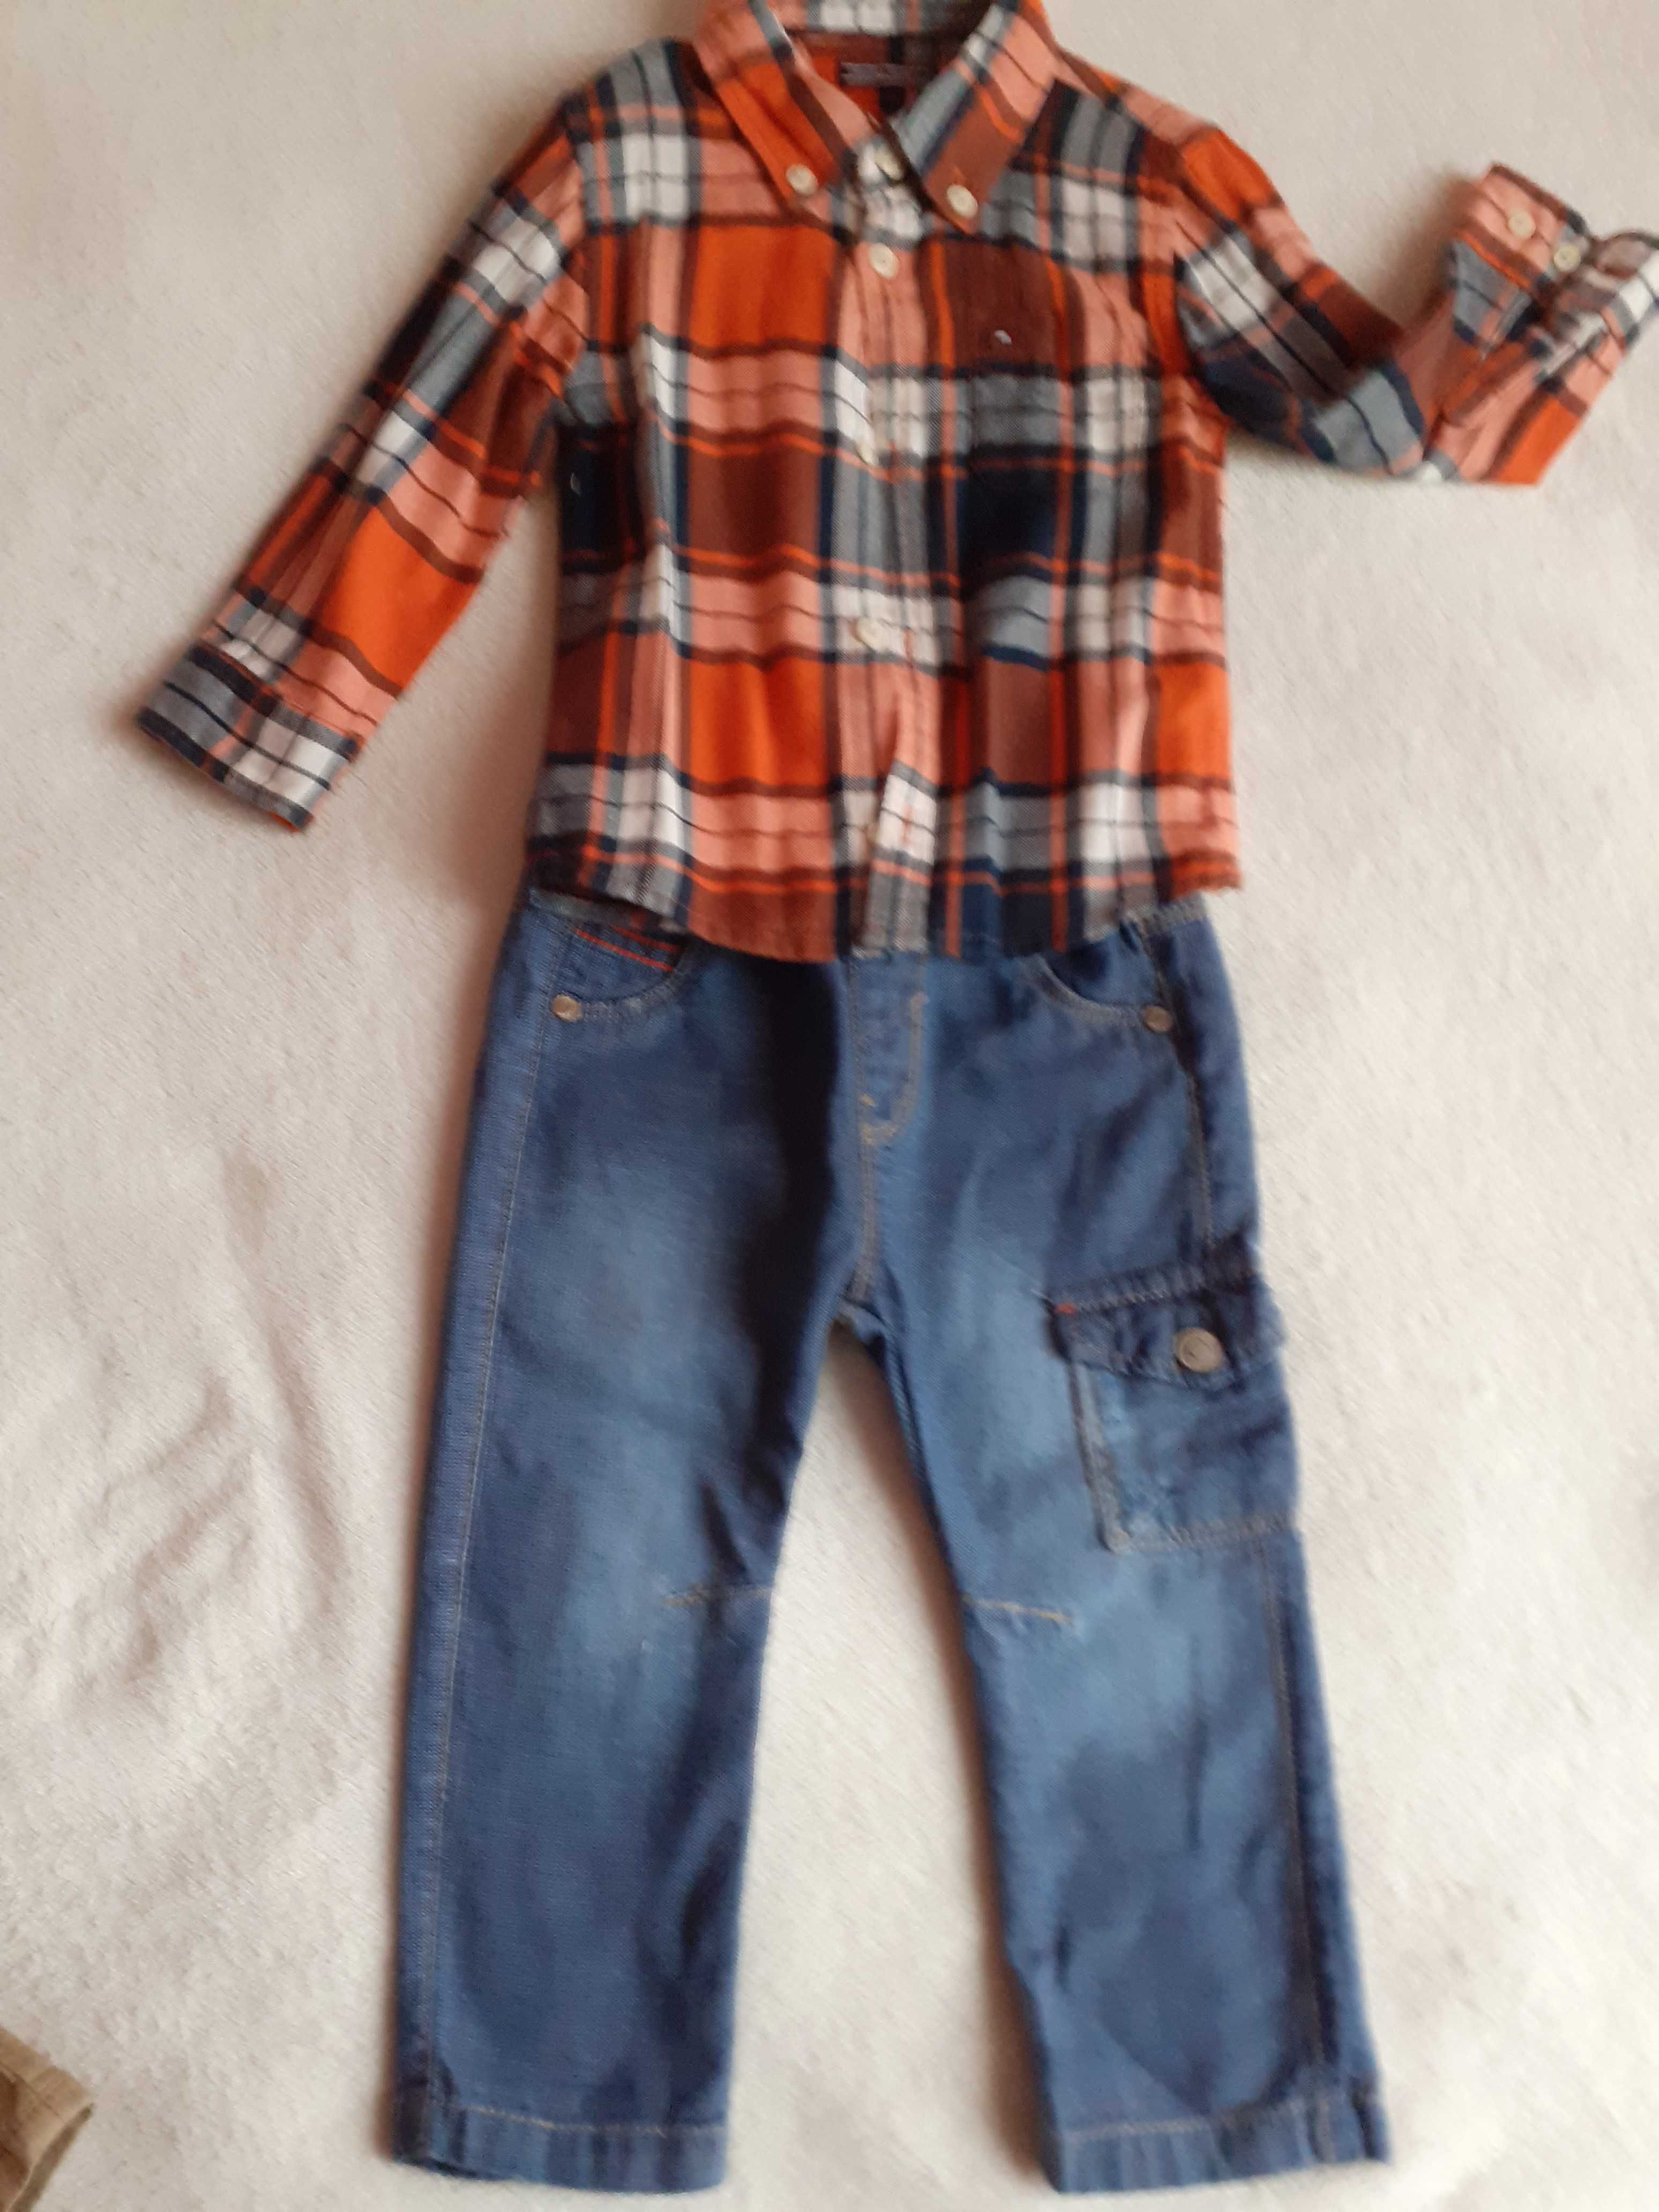 джинсы на мальчика S.Oliver (Германия) 80 см 92 см джогеры